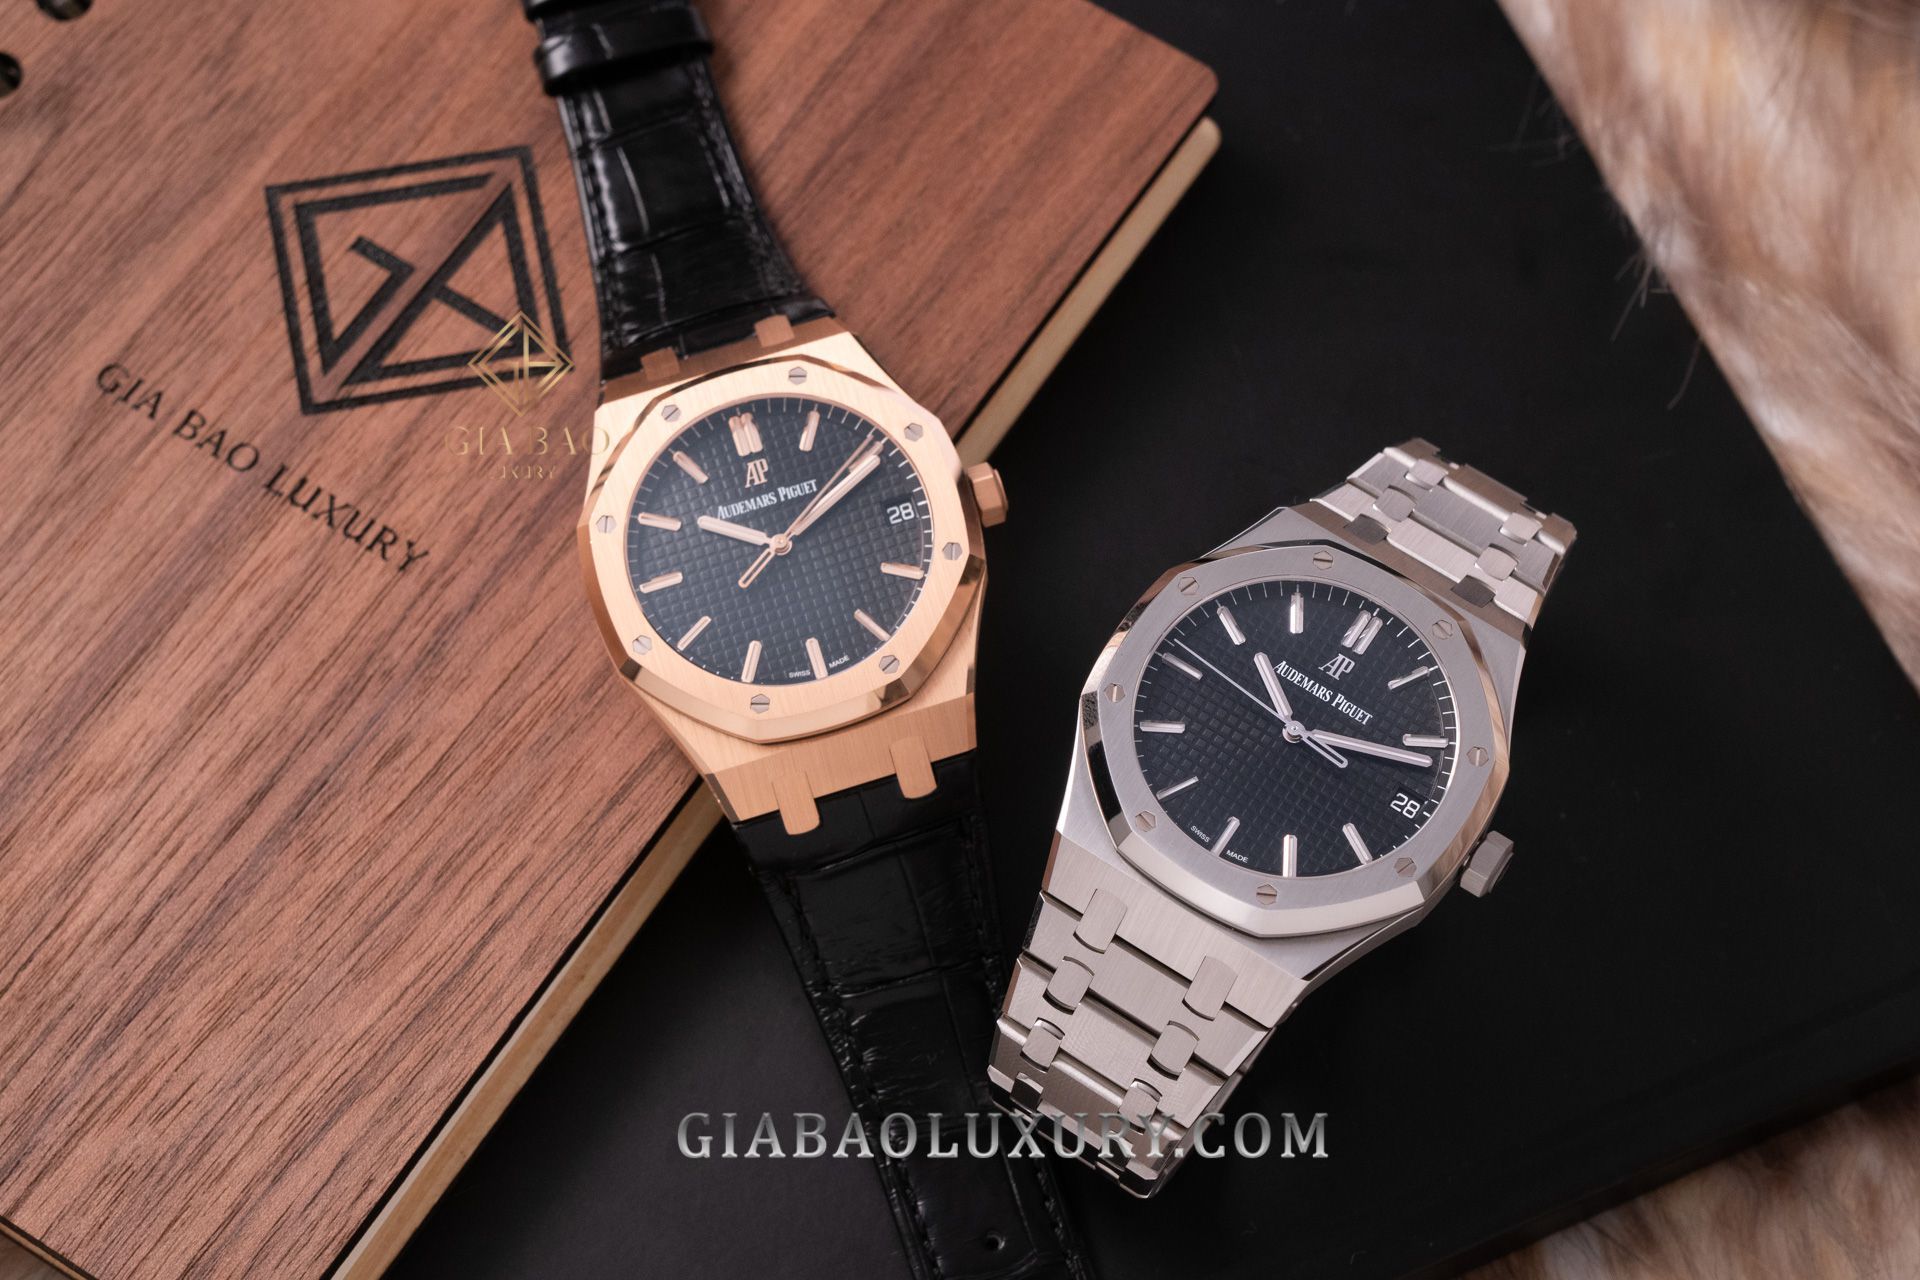 Gia Bảo Luxury thu mua đồng hồ Audemars Piguet chính hãng